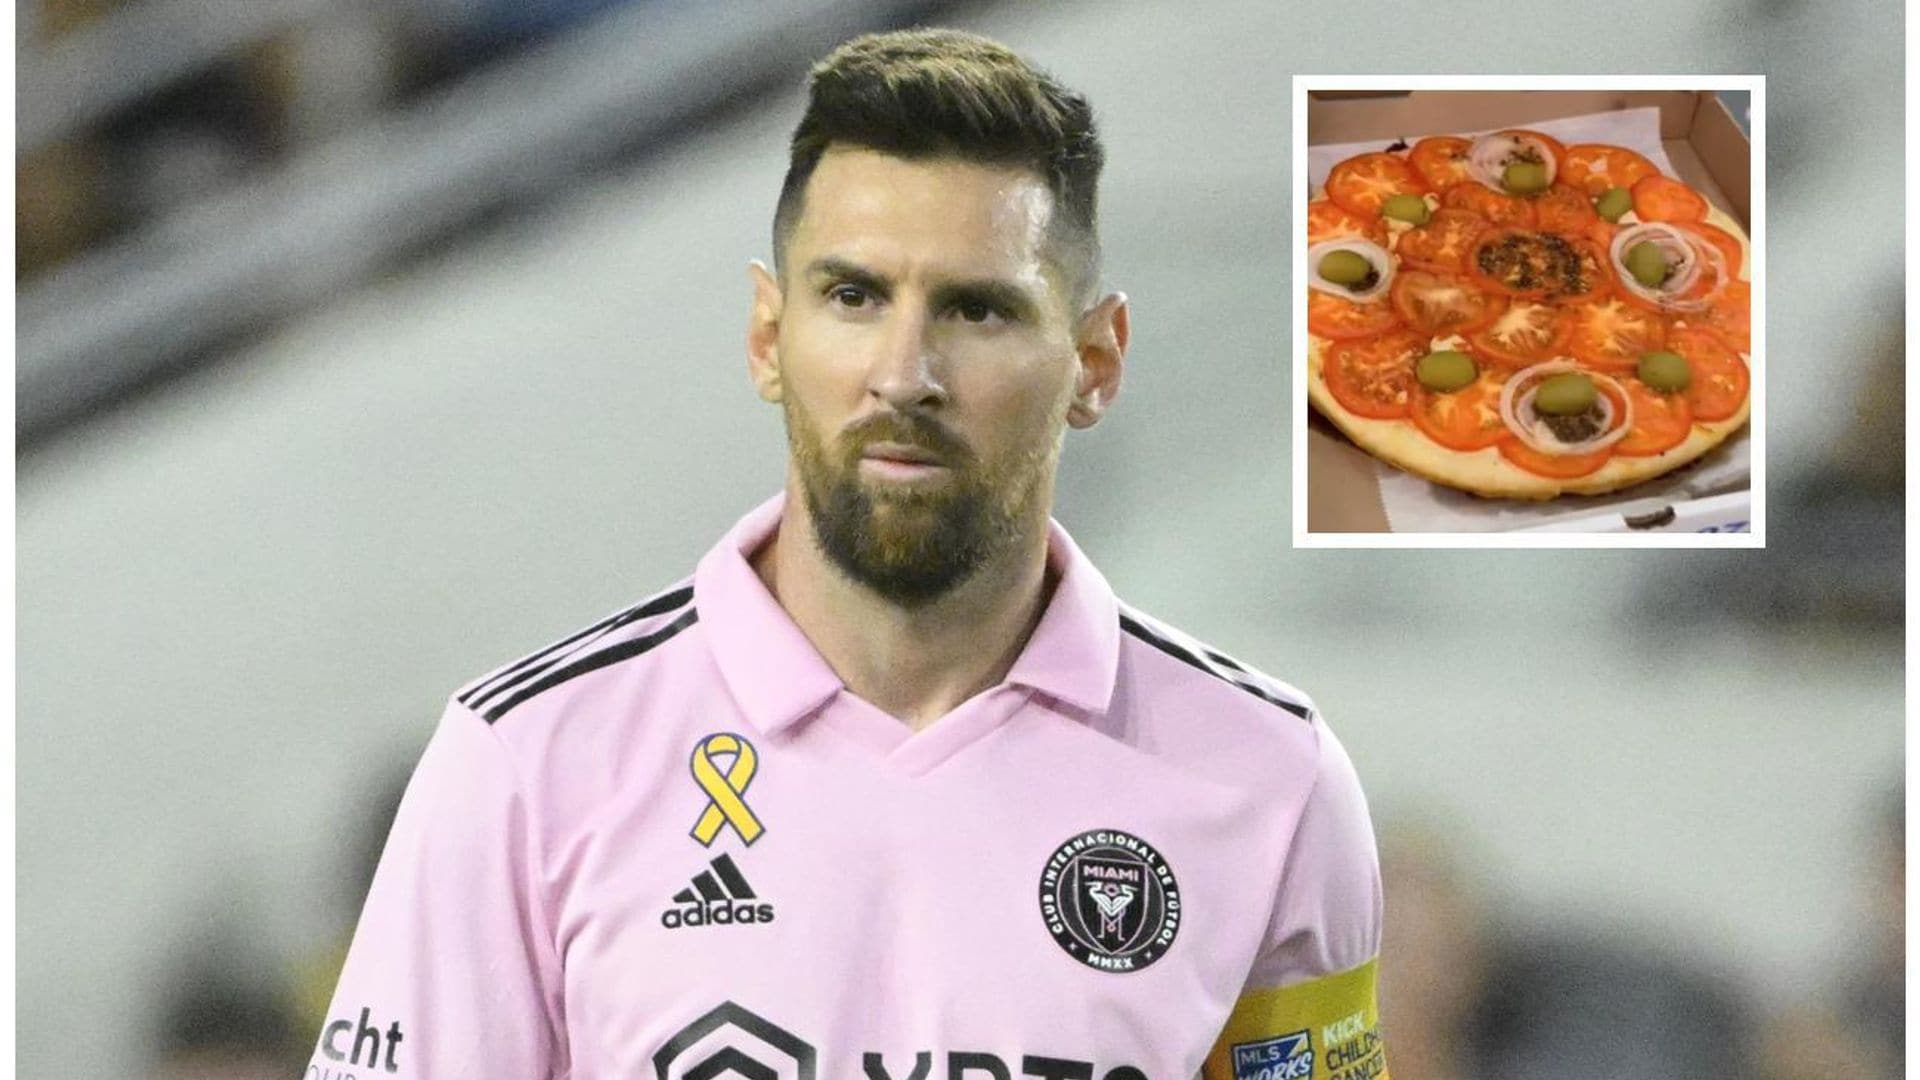 Leo Messi y la pizza de la discordia; ‘La Pulga’ causa revuelo por sus gustos culinarios